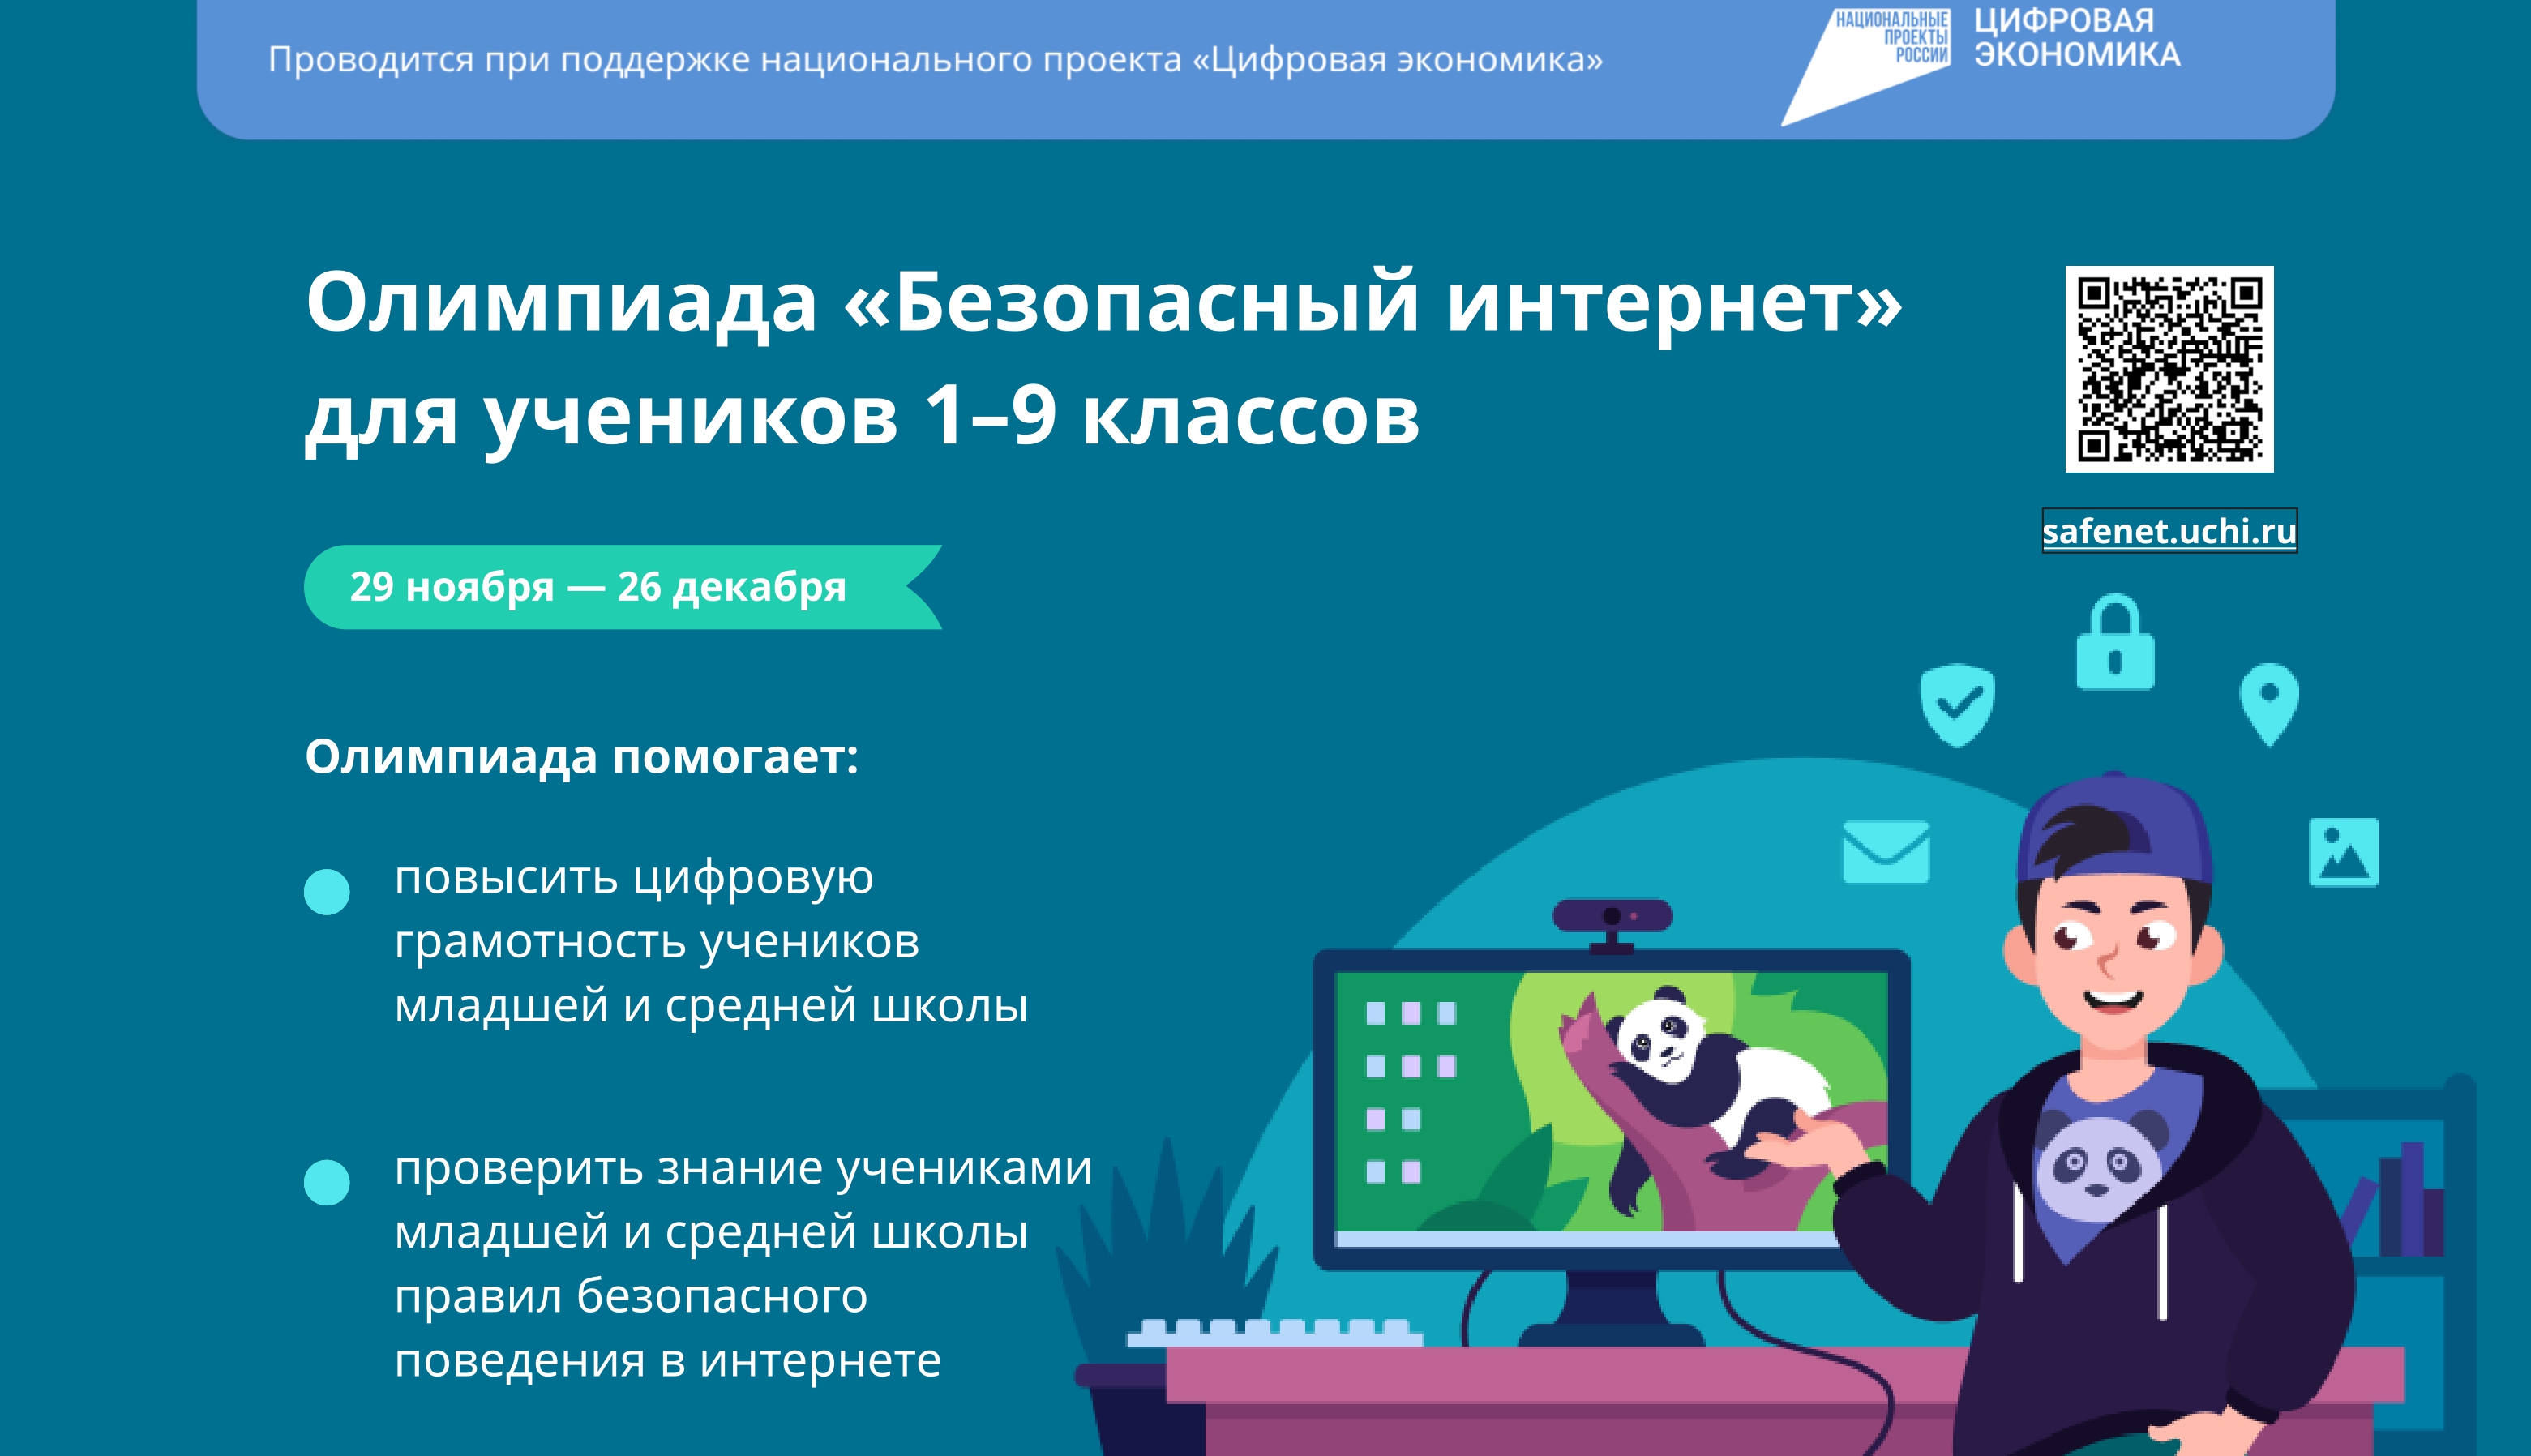 Всероссийская онлайн-олимпиада «Безопасный Интернет».